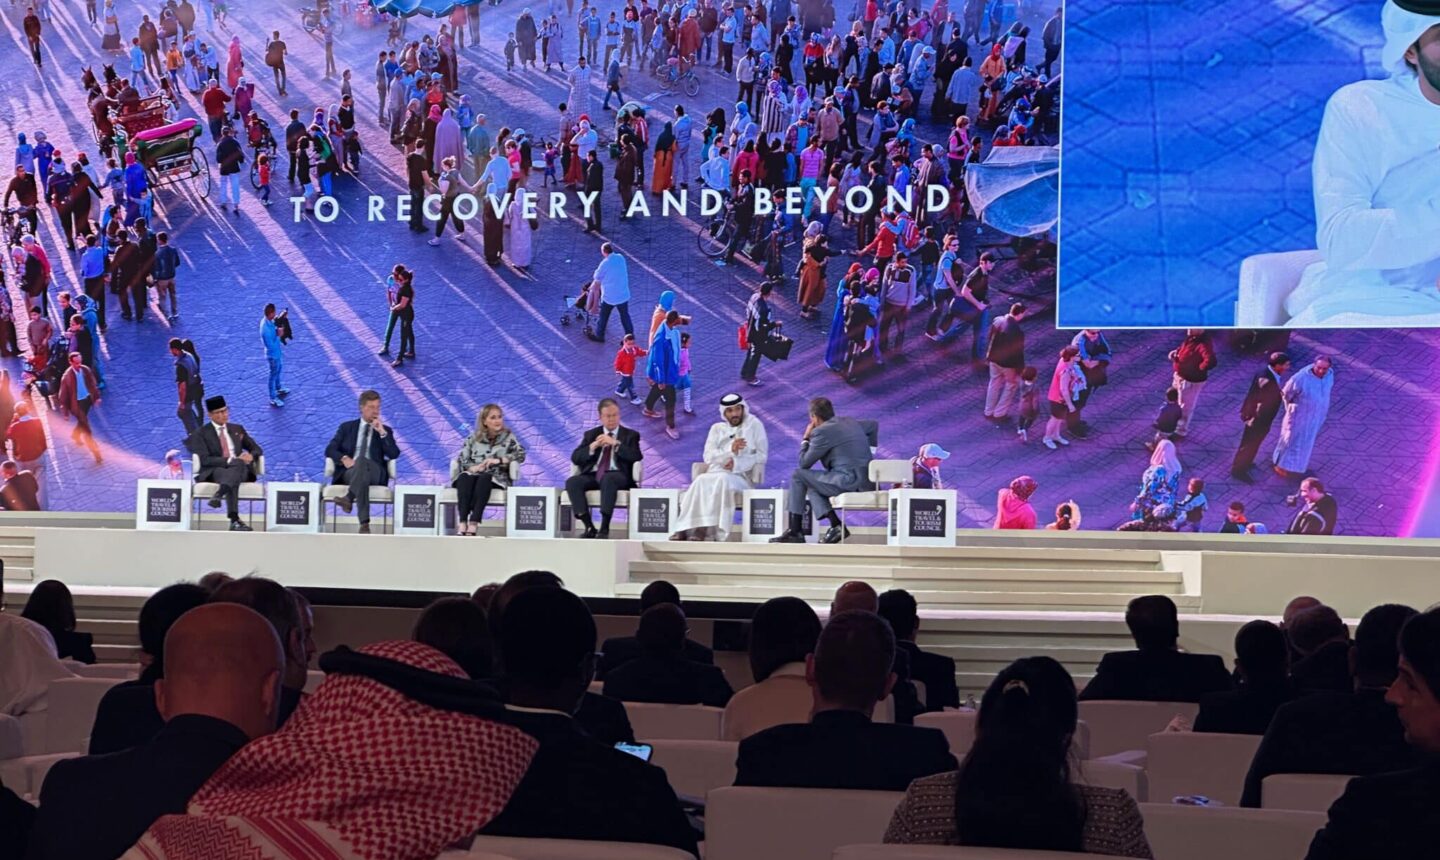 WTTC Global Summit in Saudi Arabia panel with 